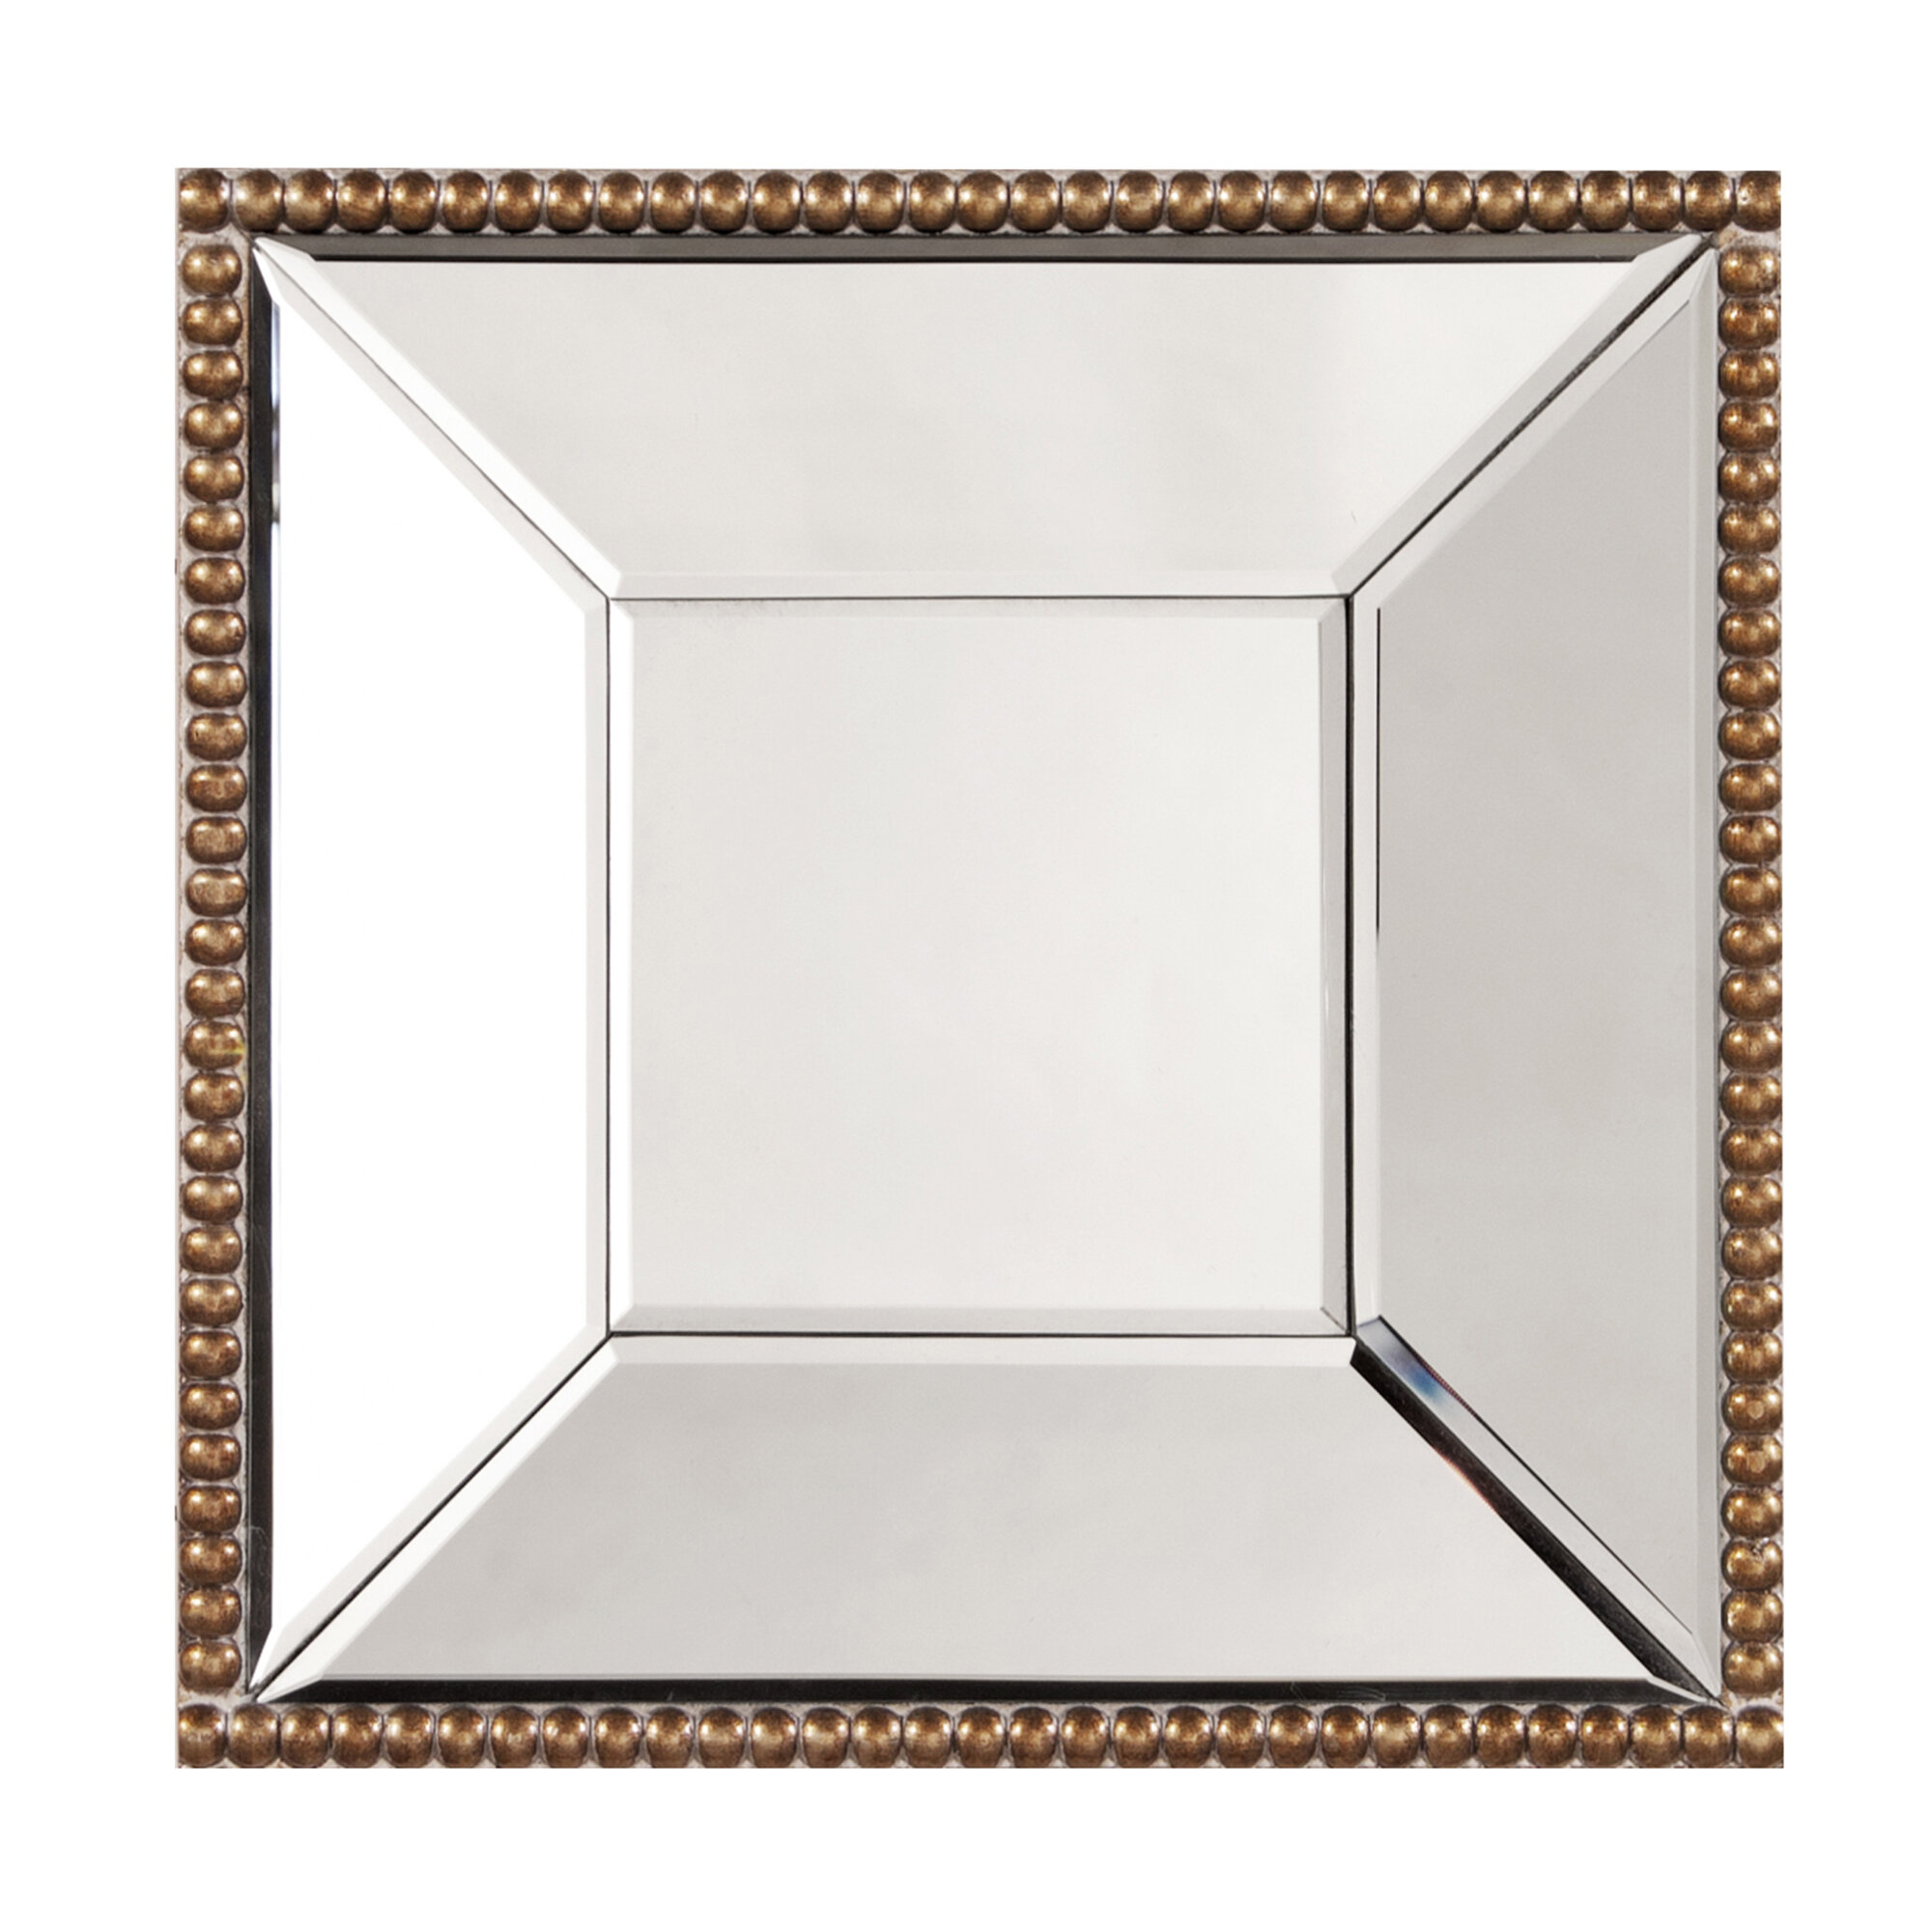 Square 1/2 inch Mini Mirrors by Darice